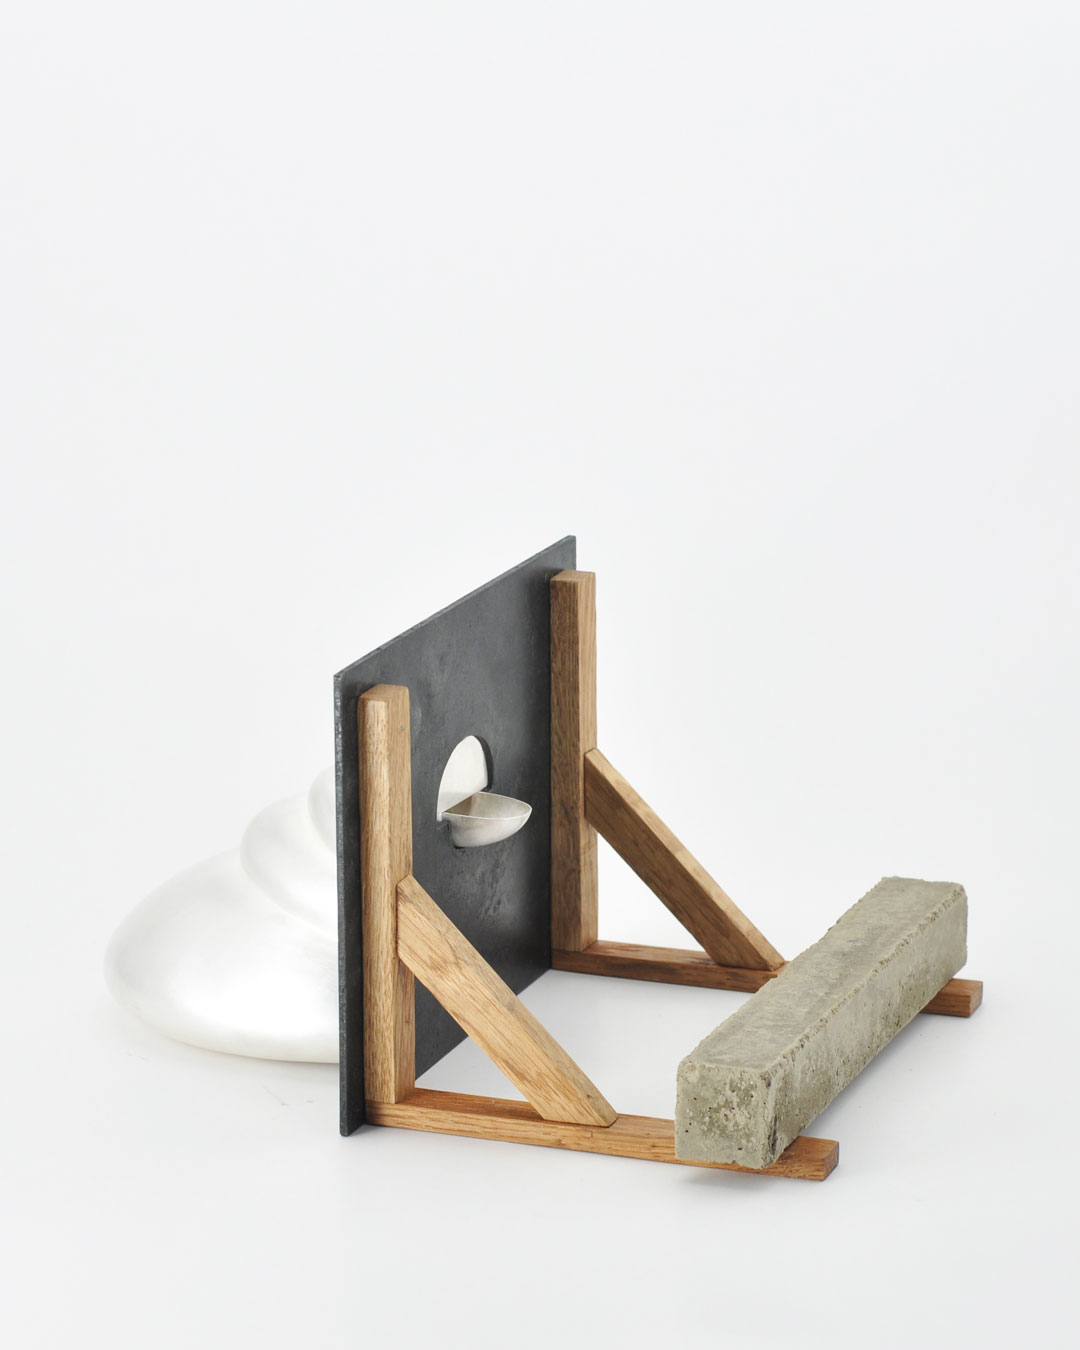 Anders Ljungberg, Peekaboo, 2019, object; silver, steel, oak, concrete, 160 x 140 x 200 mm, €5350